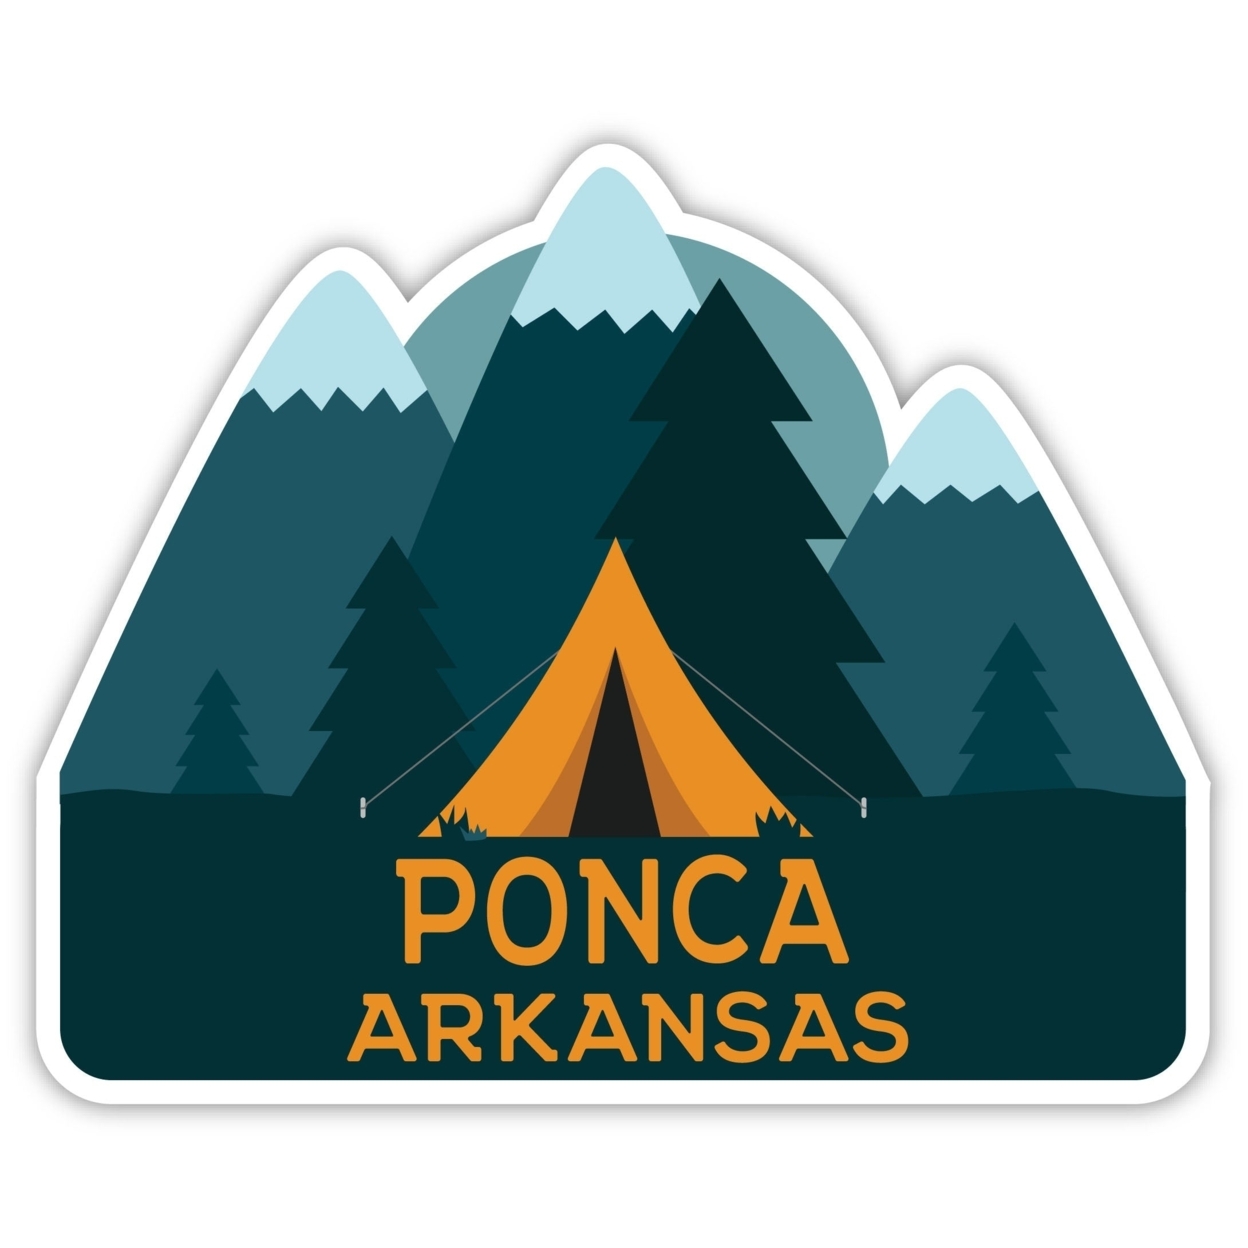 Ponca Arkansas Souvenir Decorative Stickers (Choose Theme And Size) - Single Unit, 2-Inch, Tent